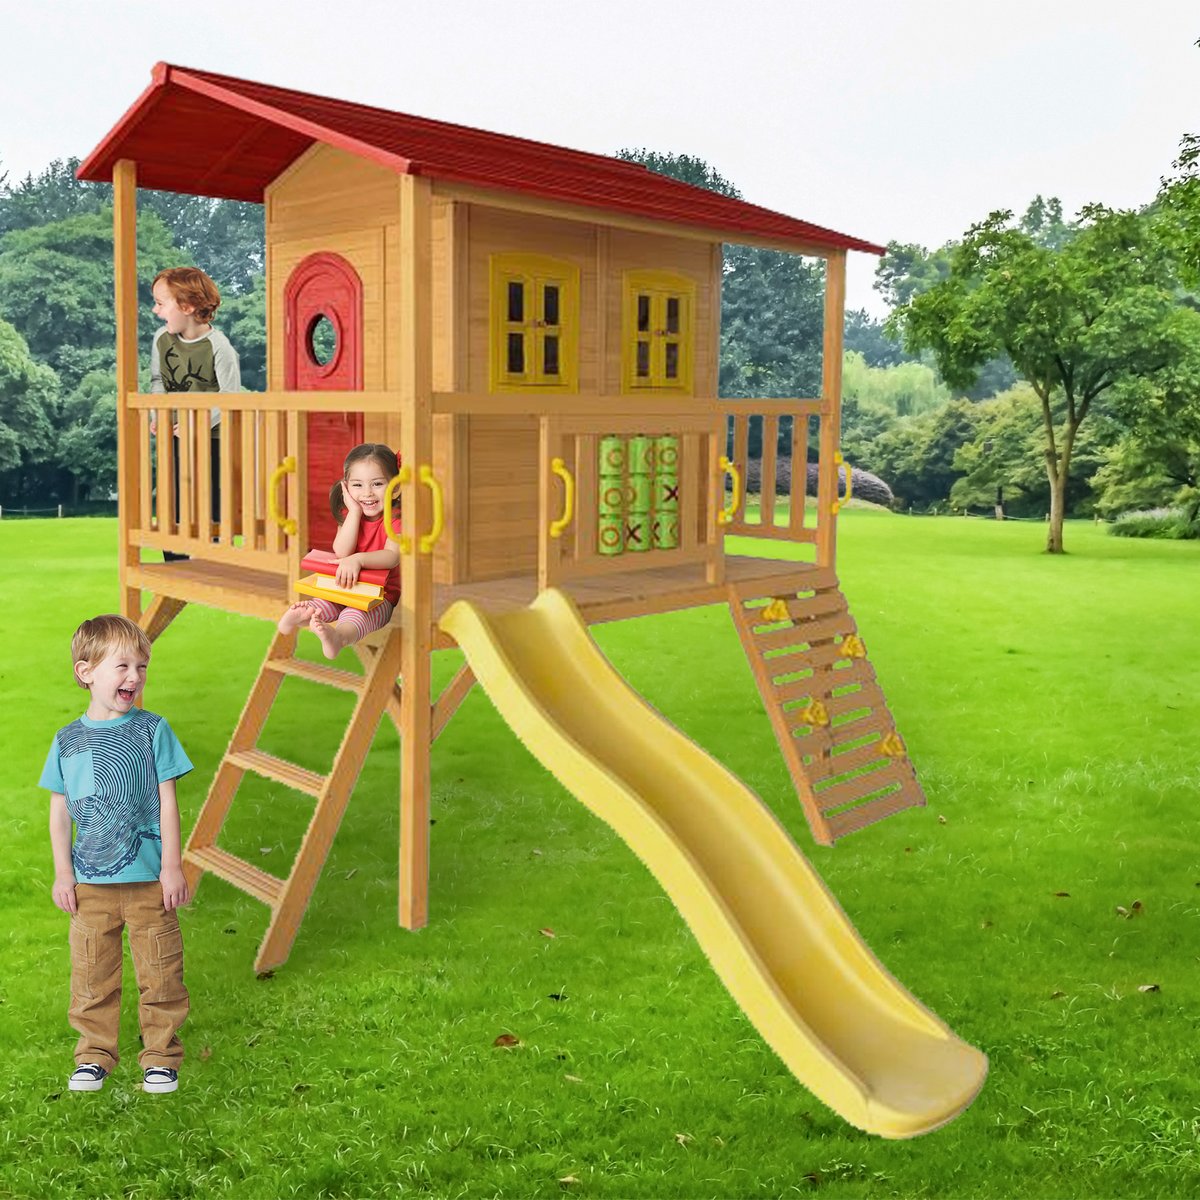 חדש!! בית עץ לילדים דגם פיקוס